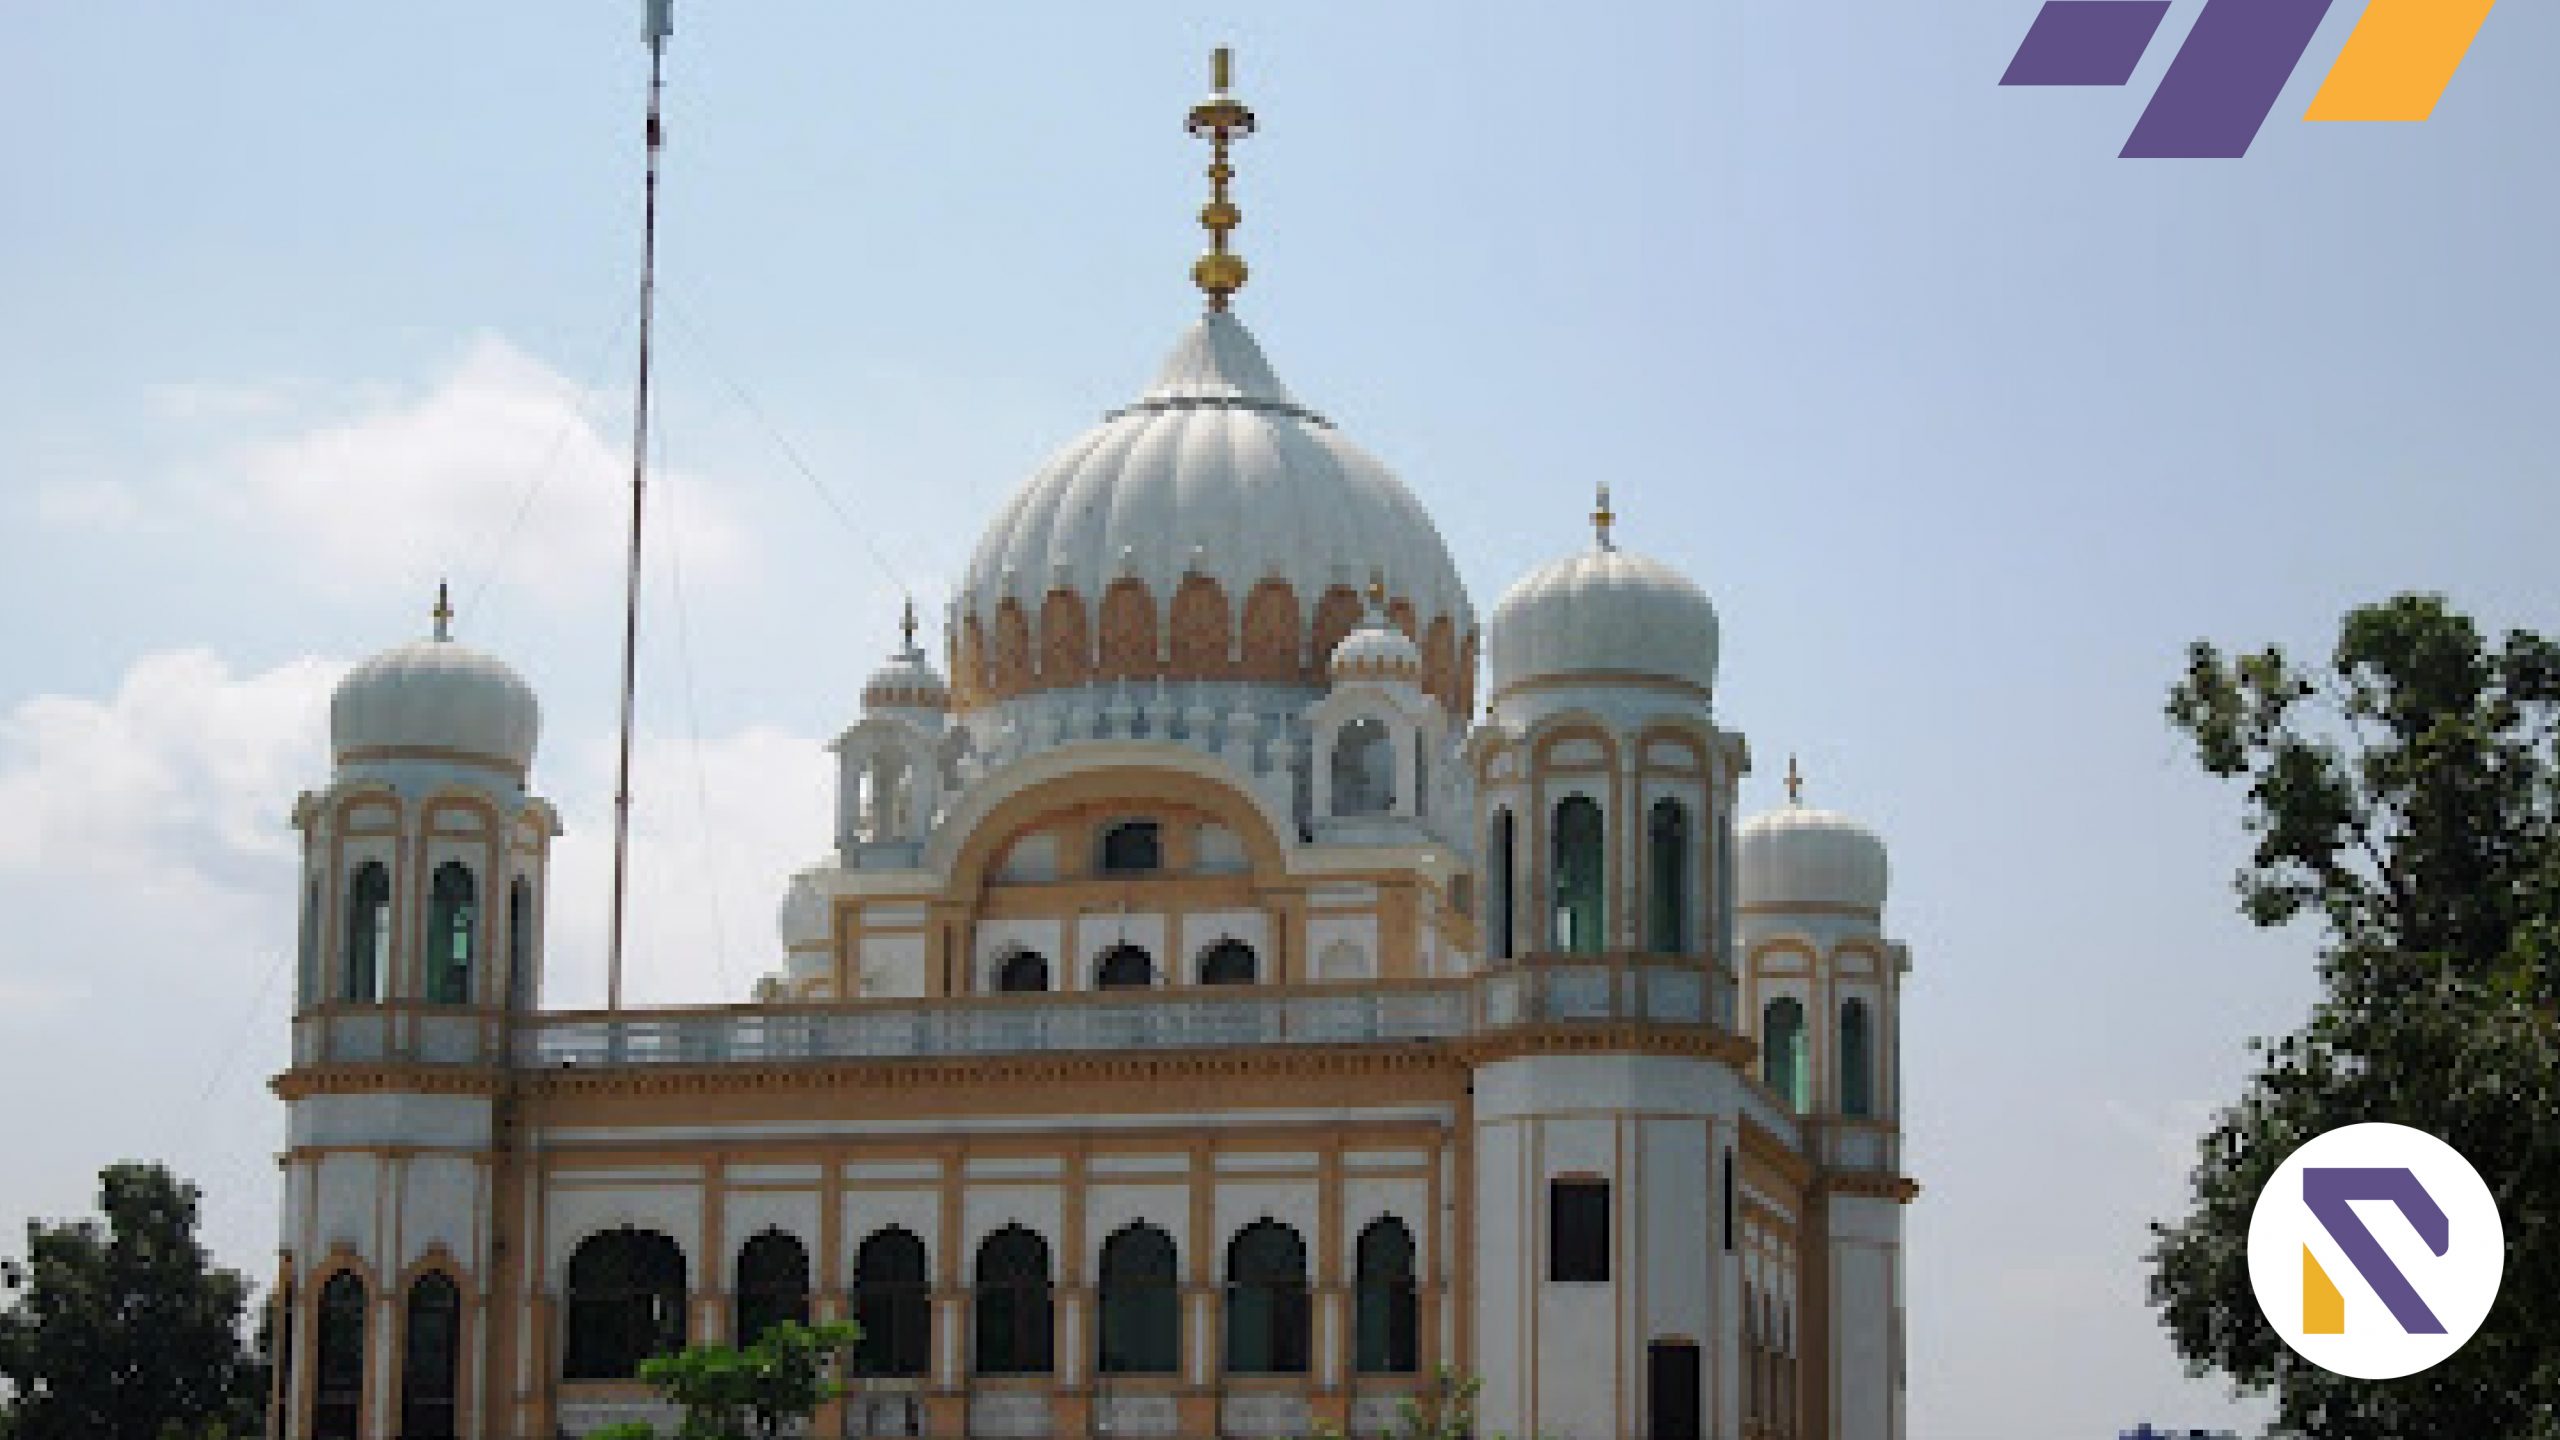 Construction of Kartarpur Darshan Resort in works for Sikh pilgrims- Realtorspk